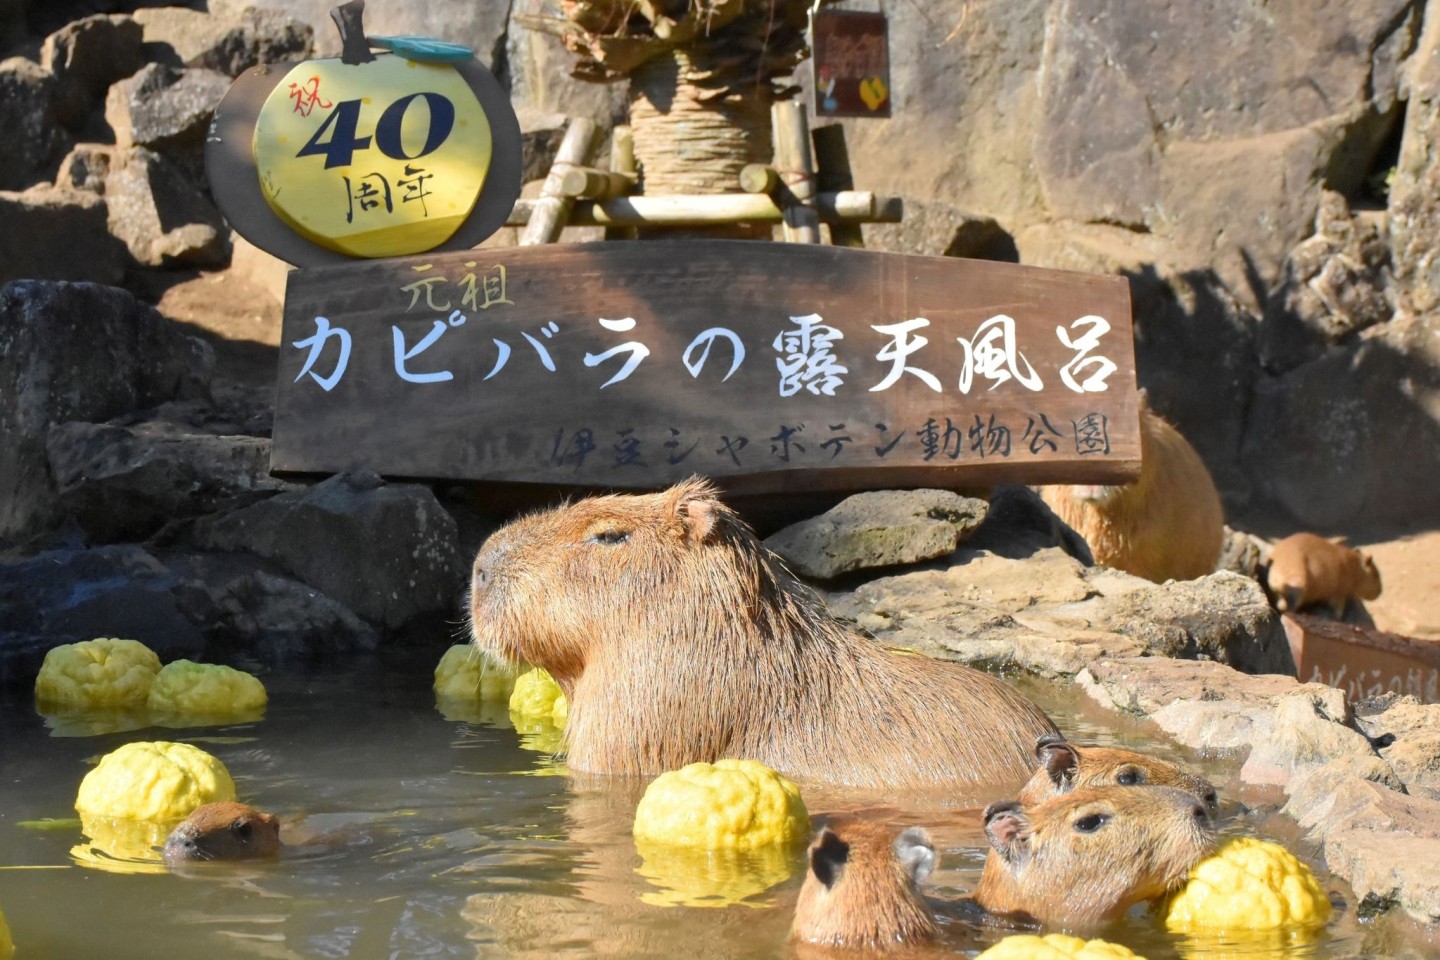 Wasserschweine im heißen Bad des Zoo Izu Shaboten.